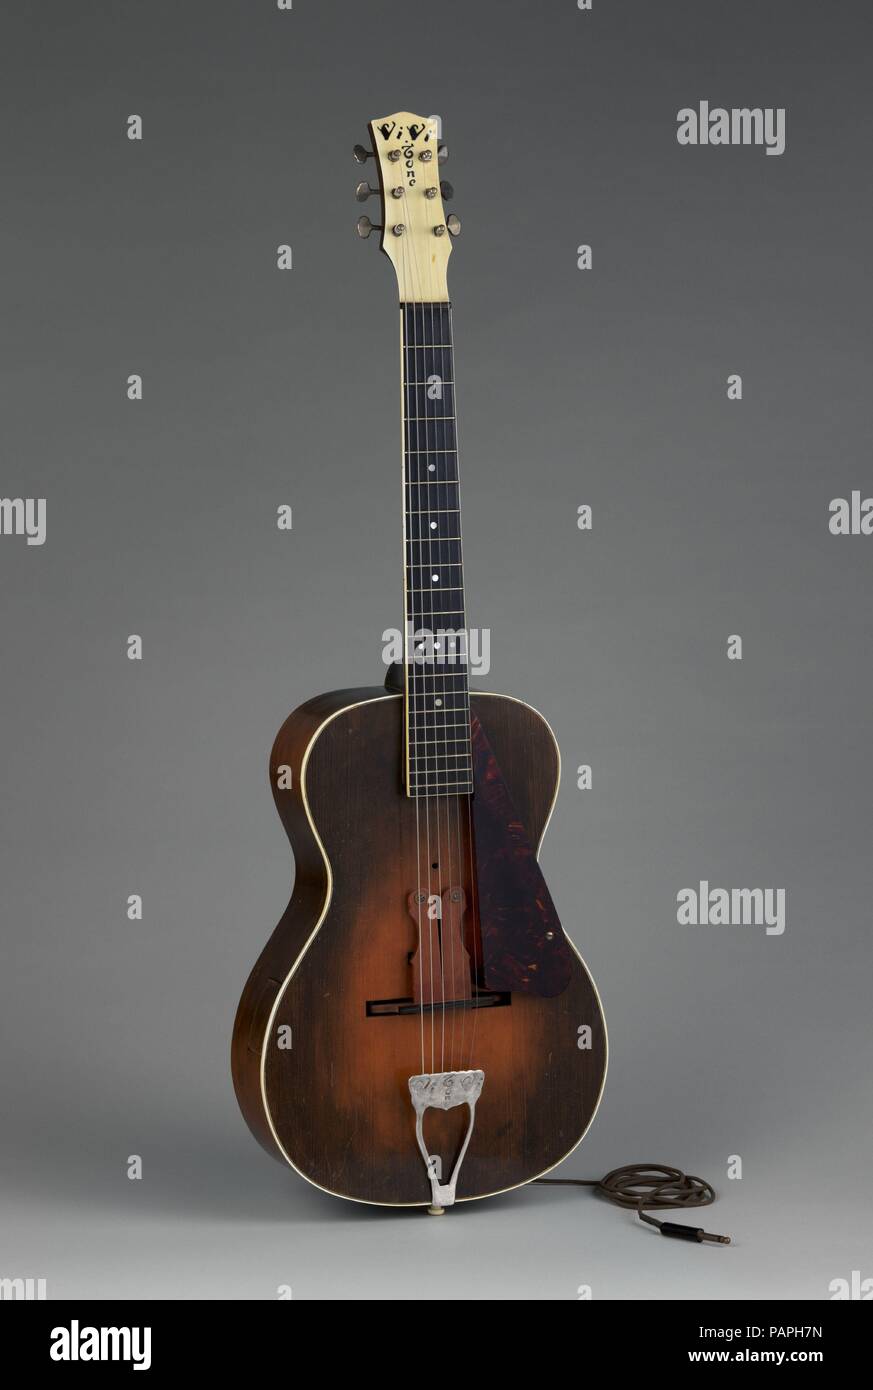 Acoustic-Electric chitarra. Cultura: American. Dimensioni: Altezza: 39 1/8  in. (99,4 cm) di larghezza (in basso a bout): 13 1/8 in. (33,3 cm)  Profondità (a lato del cerchione): 3 3/4 in. (9.5 cm).